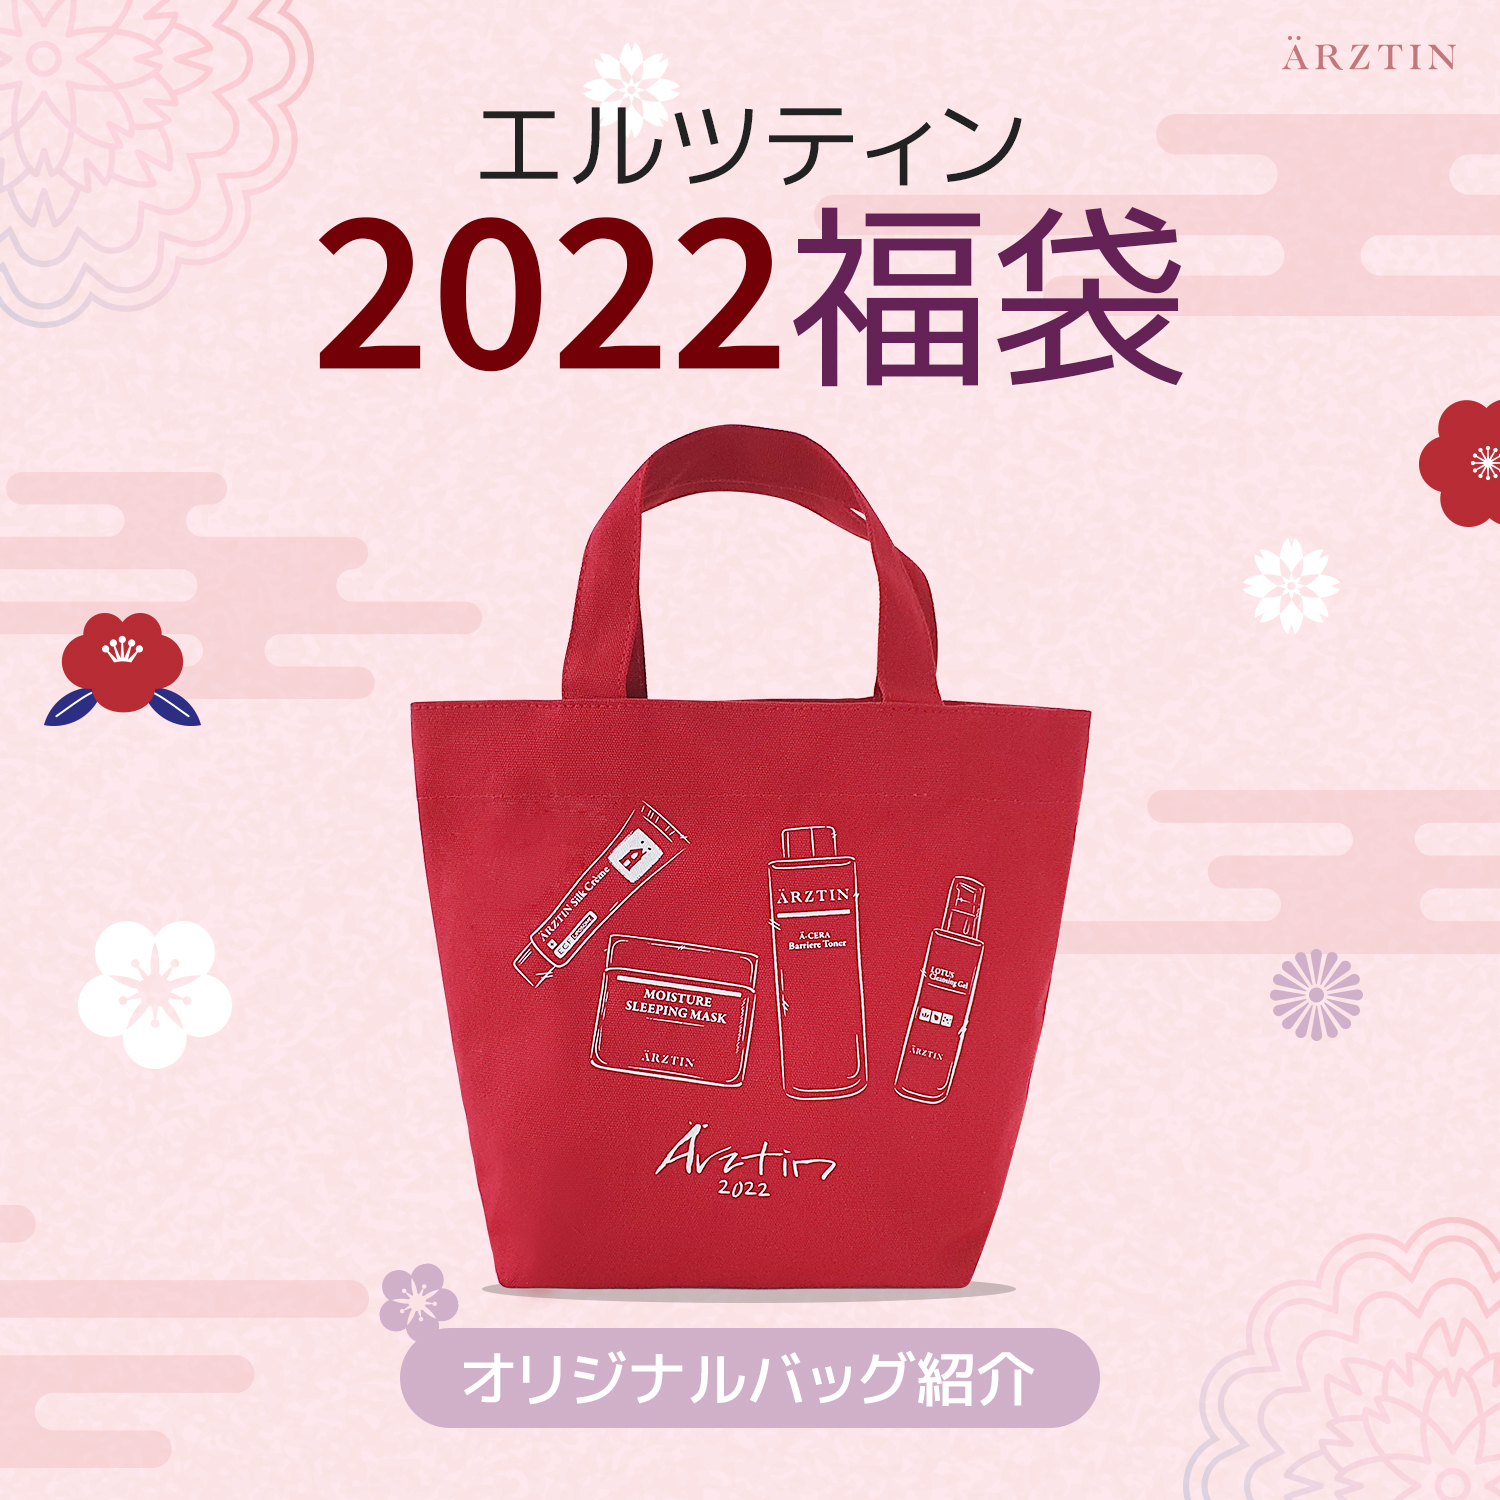 ARZTIN 【ノベルティ紹介】2022エルツティン福袋オリジナルエコバッグ